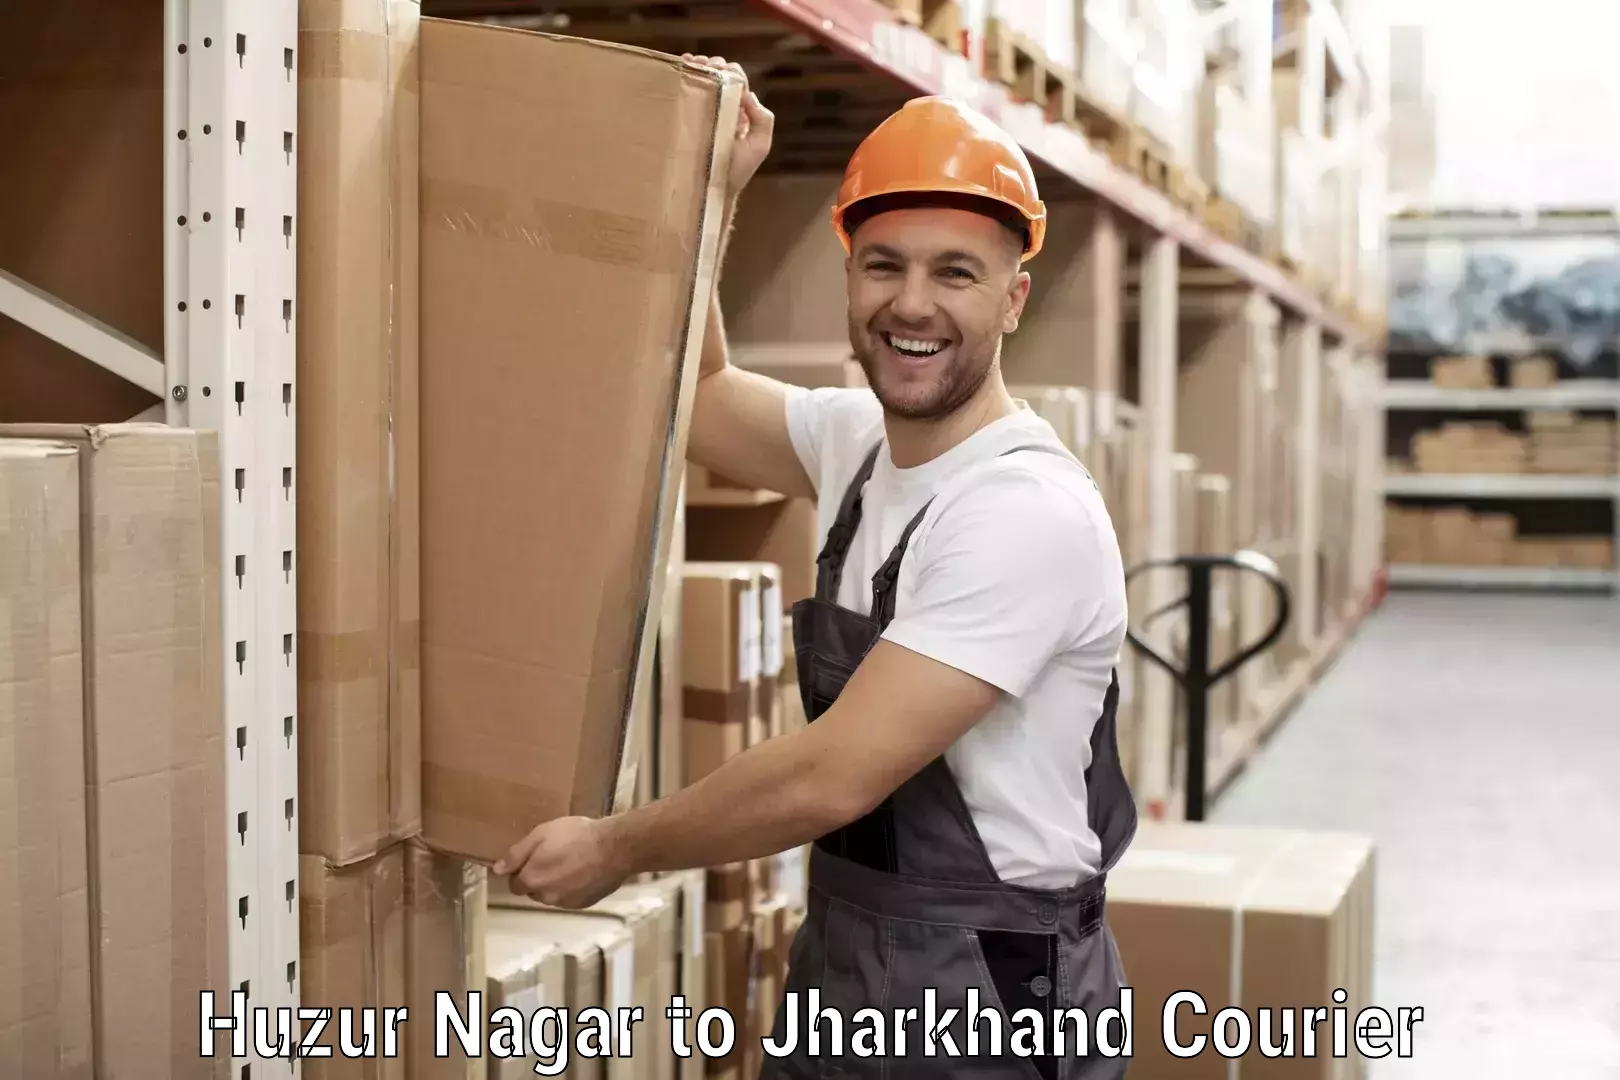 Customer-oriented courier services Huzur Nagar to Hazaribagh